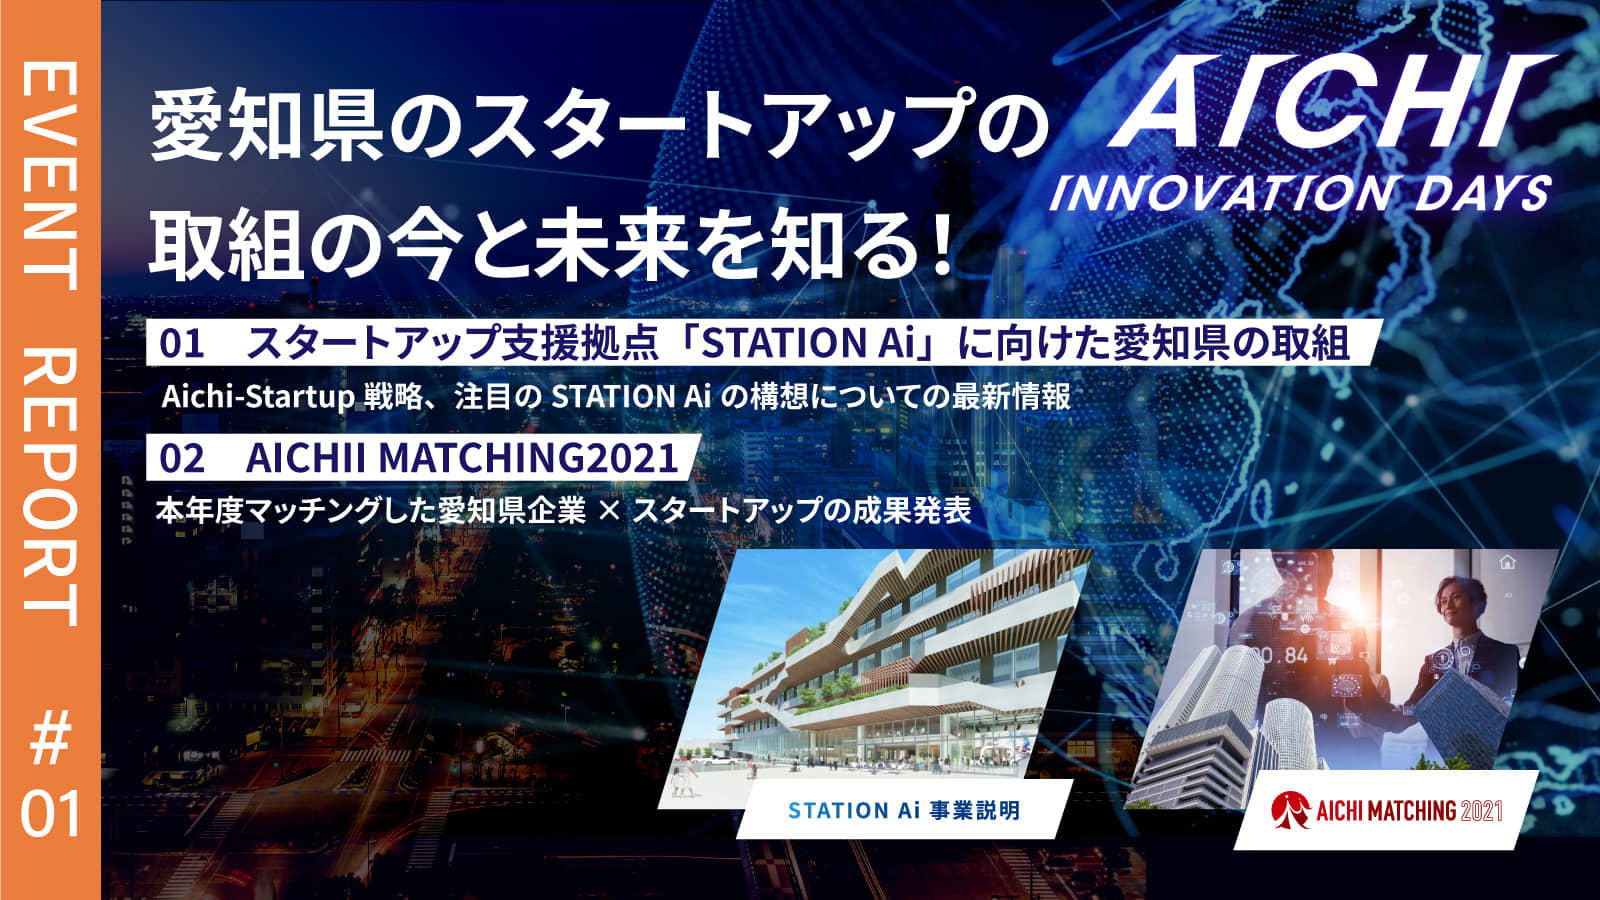 愛知のスタートアップエコシステム構想と共創事例に迫る Aichi Innovation Days イベントレポート